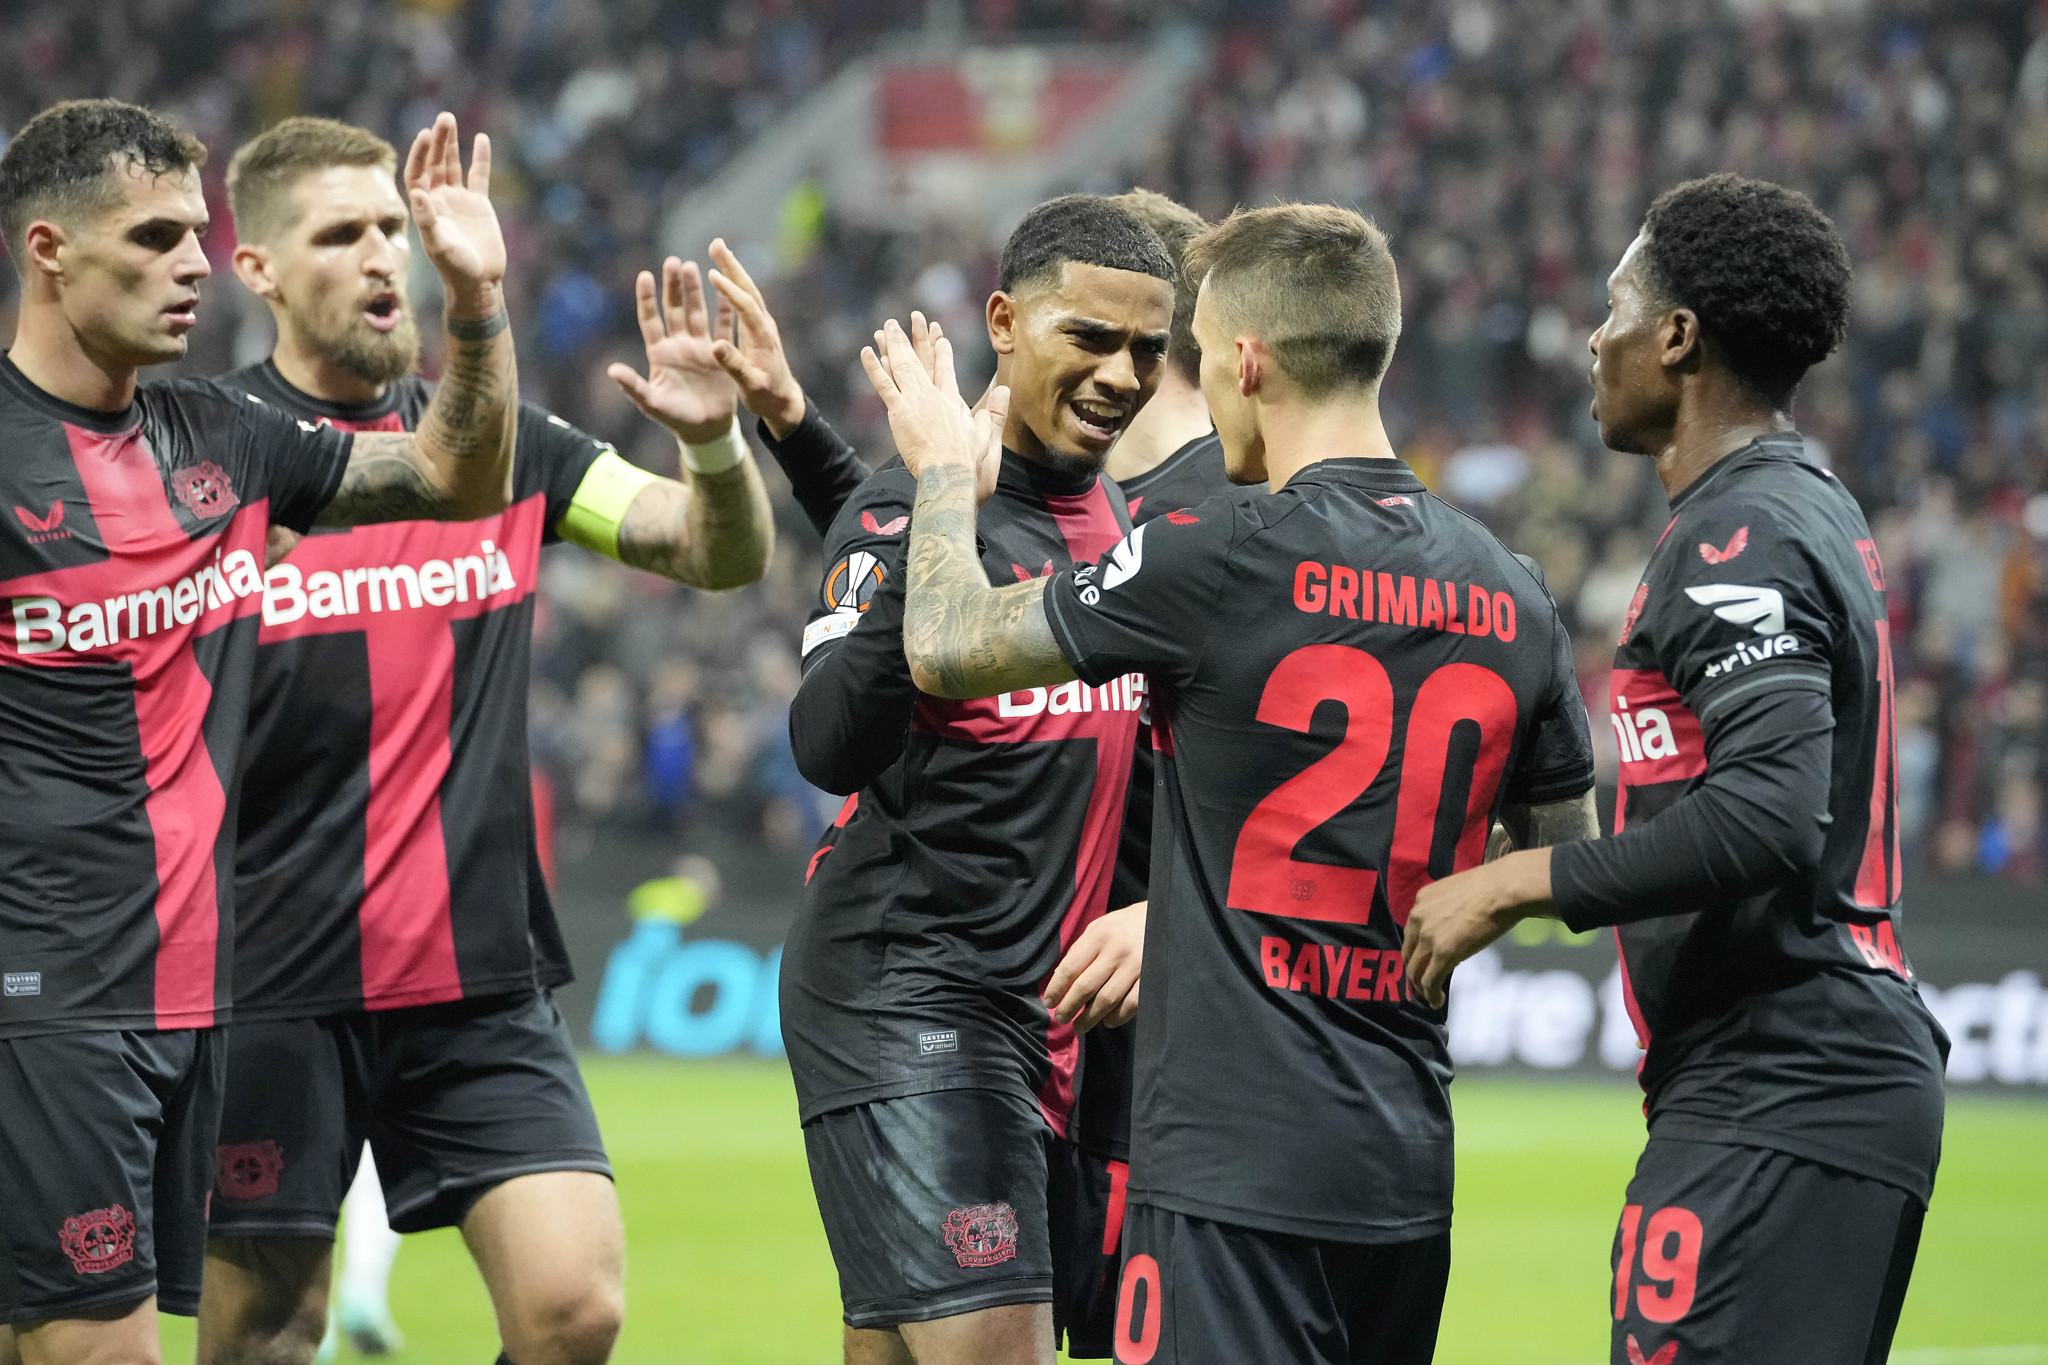 Los jugadores del Leverkusen celebran el gol de Grimaldo.